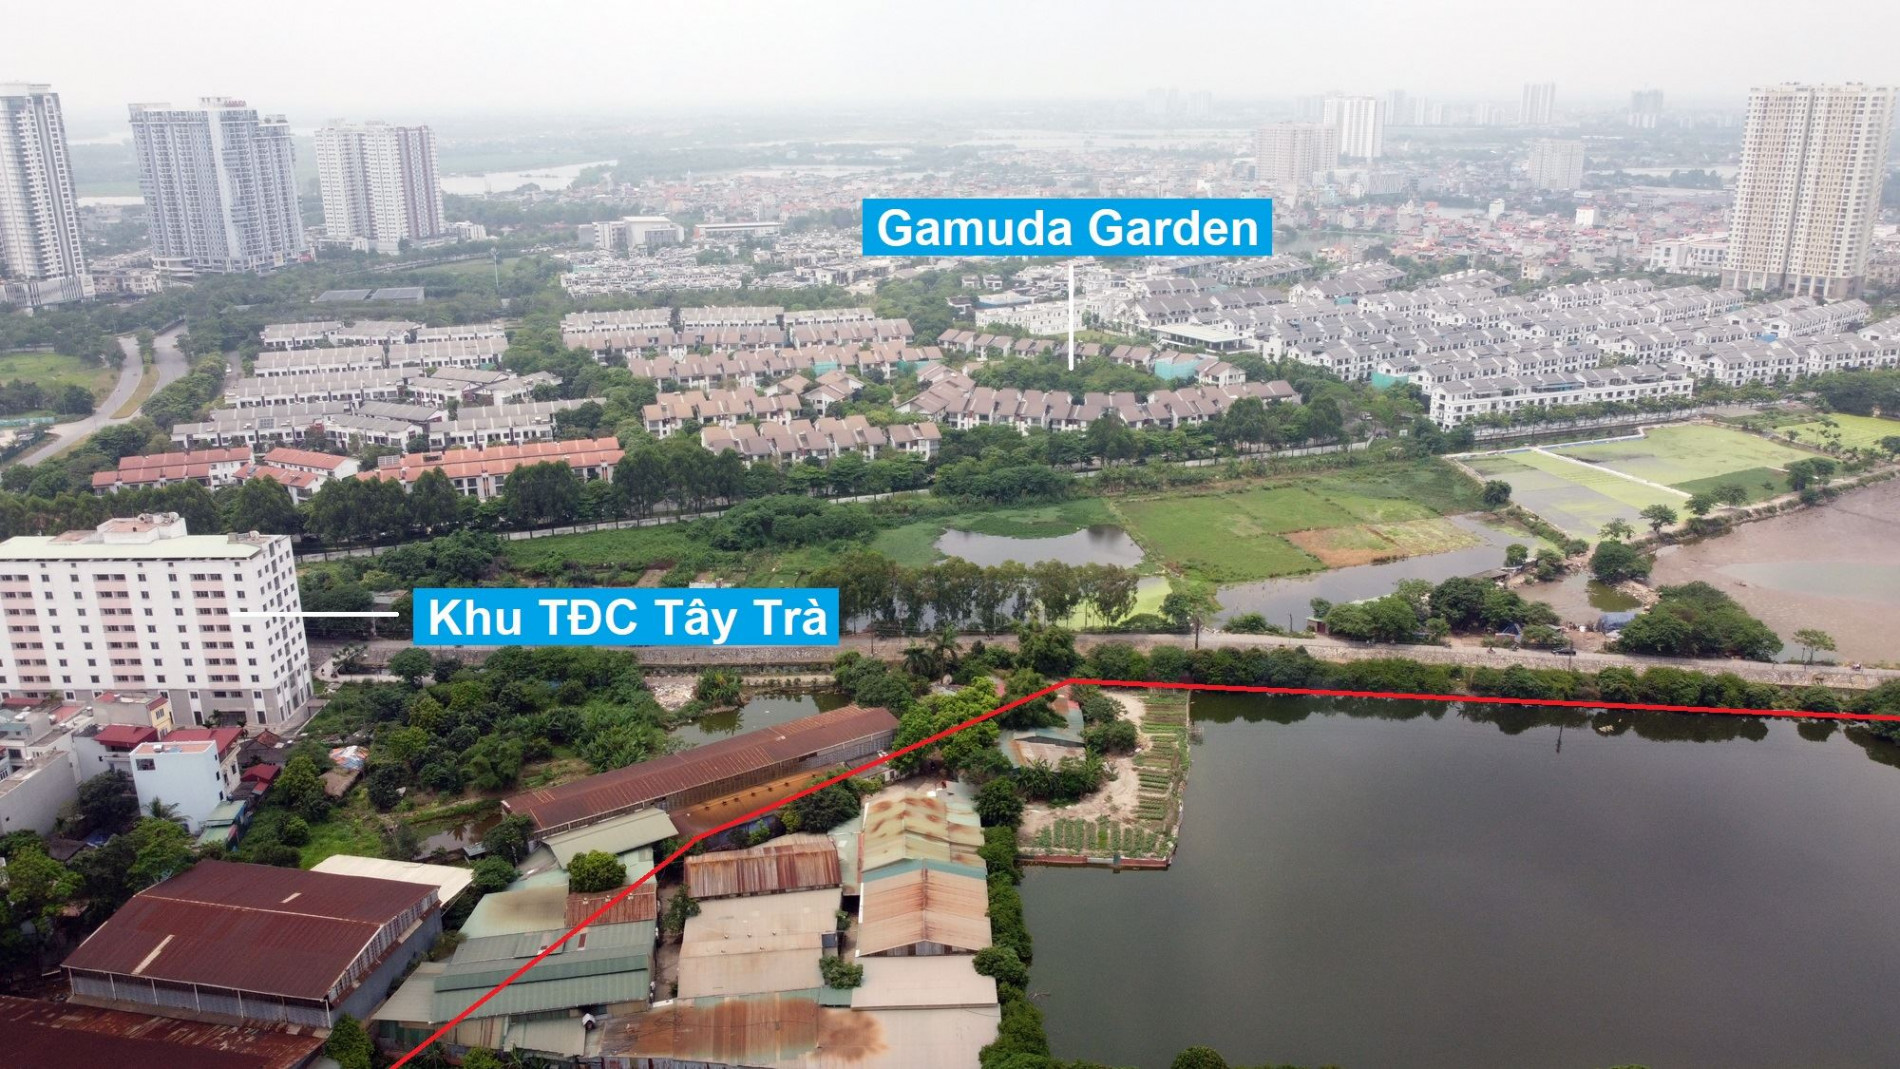 Những khu đất sắp thu hồi để xây trường học ở quận Hoàng Mai, Hà Nội